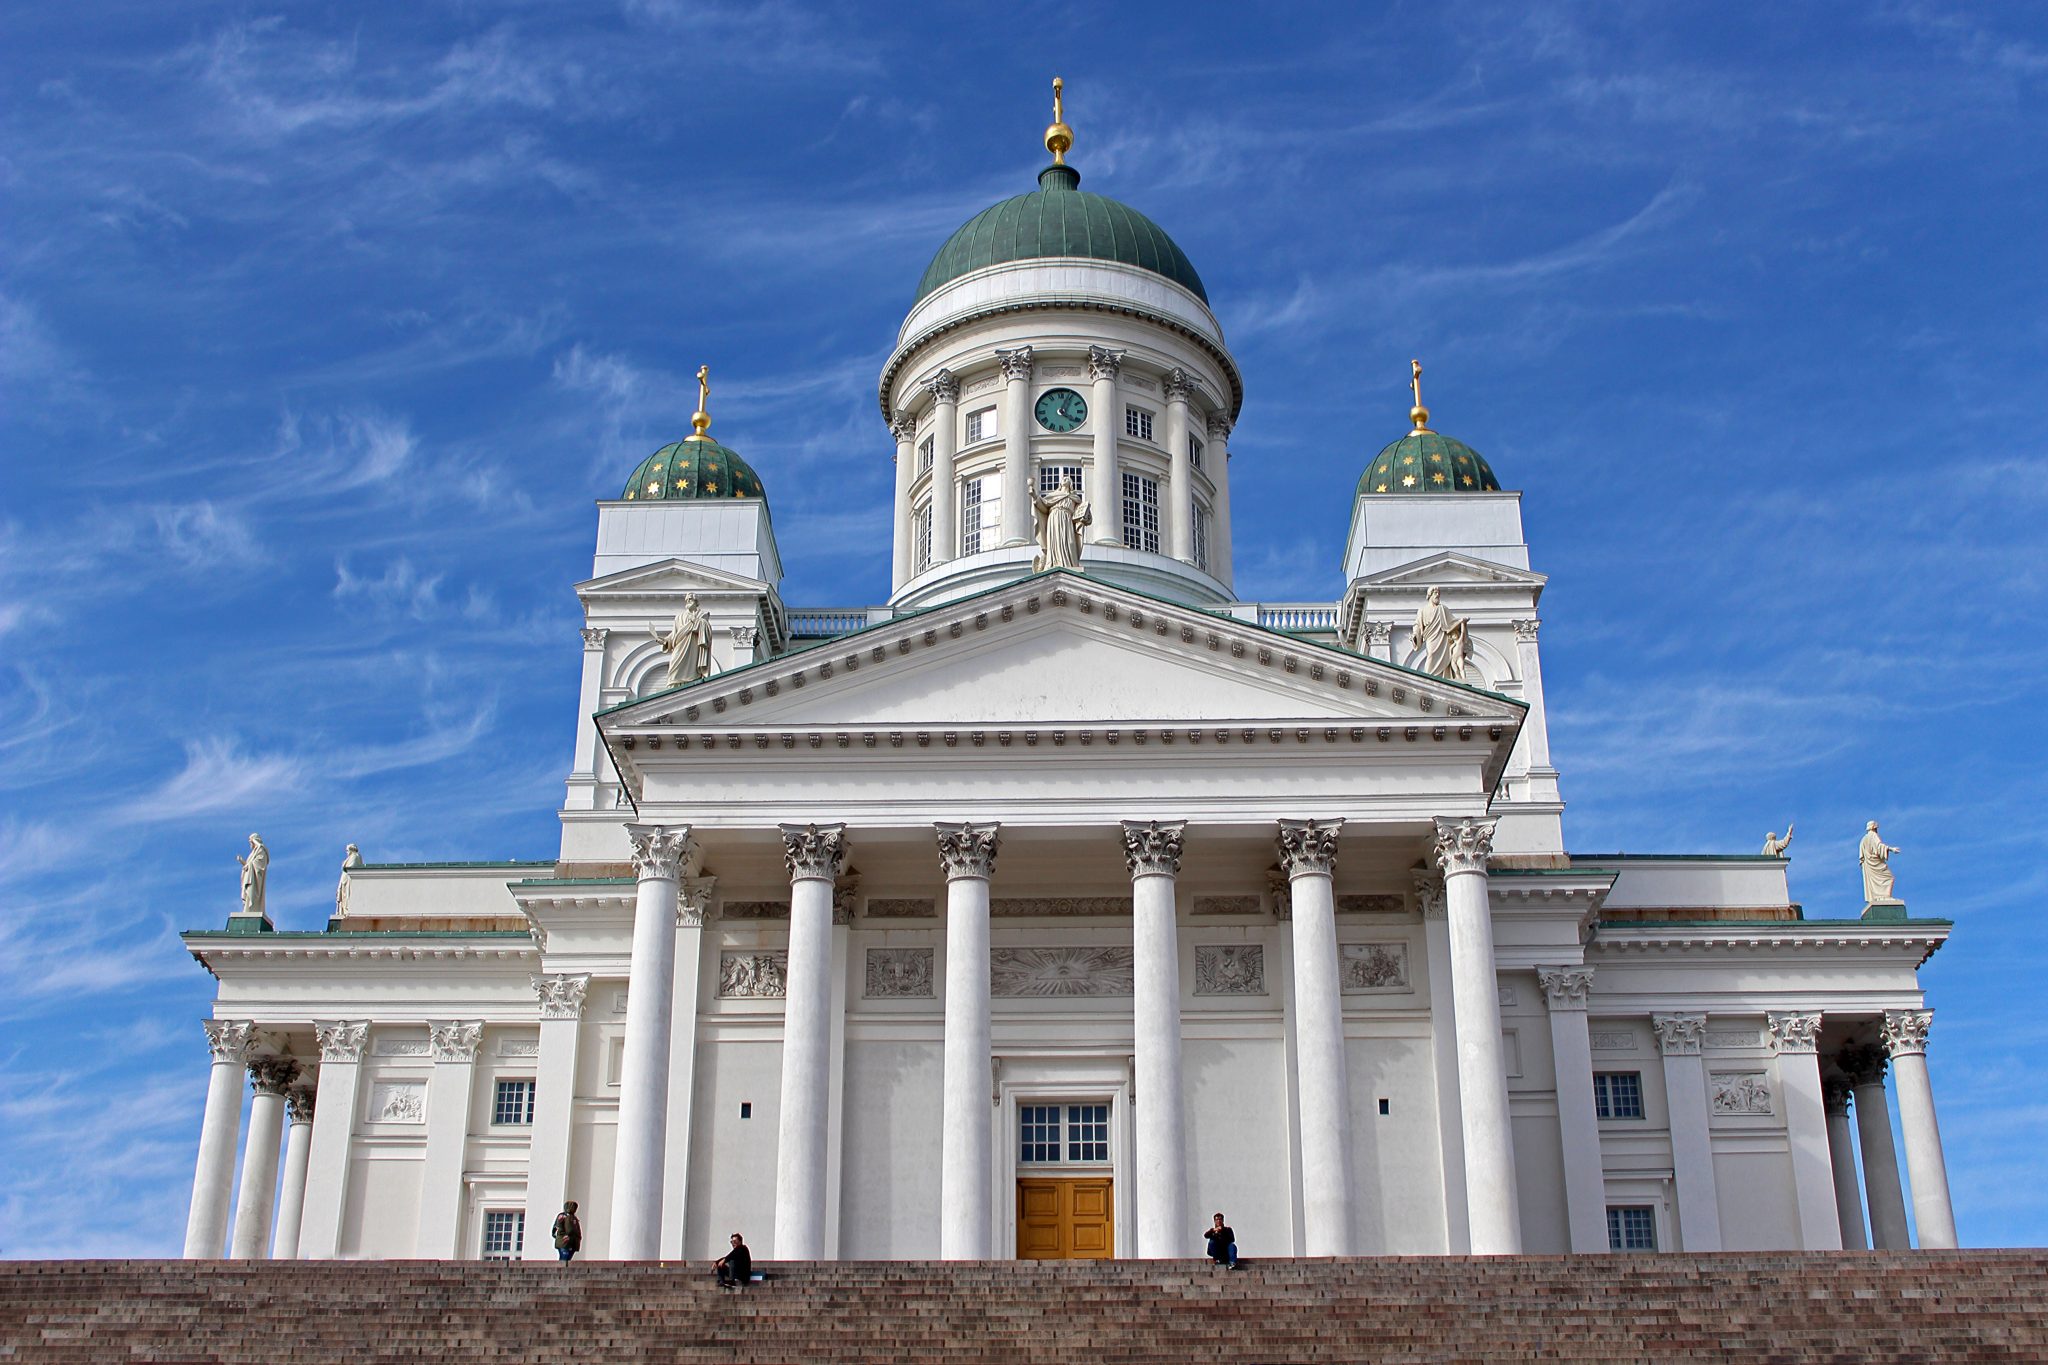 جامعة هلسنكي في فنلندا التي يمكن أن يلتحق بها الطلاب أثناء الدراسة في فنلندا